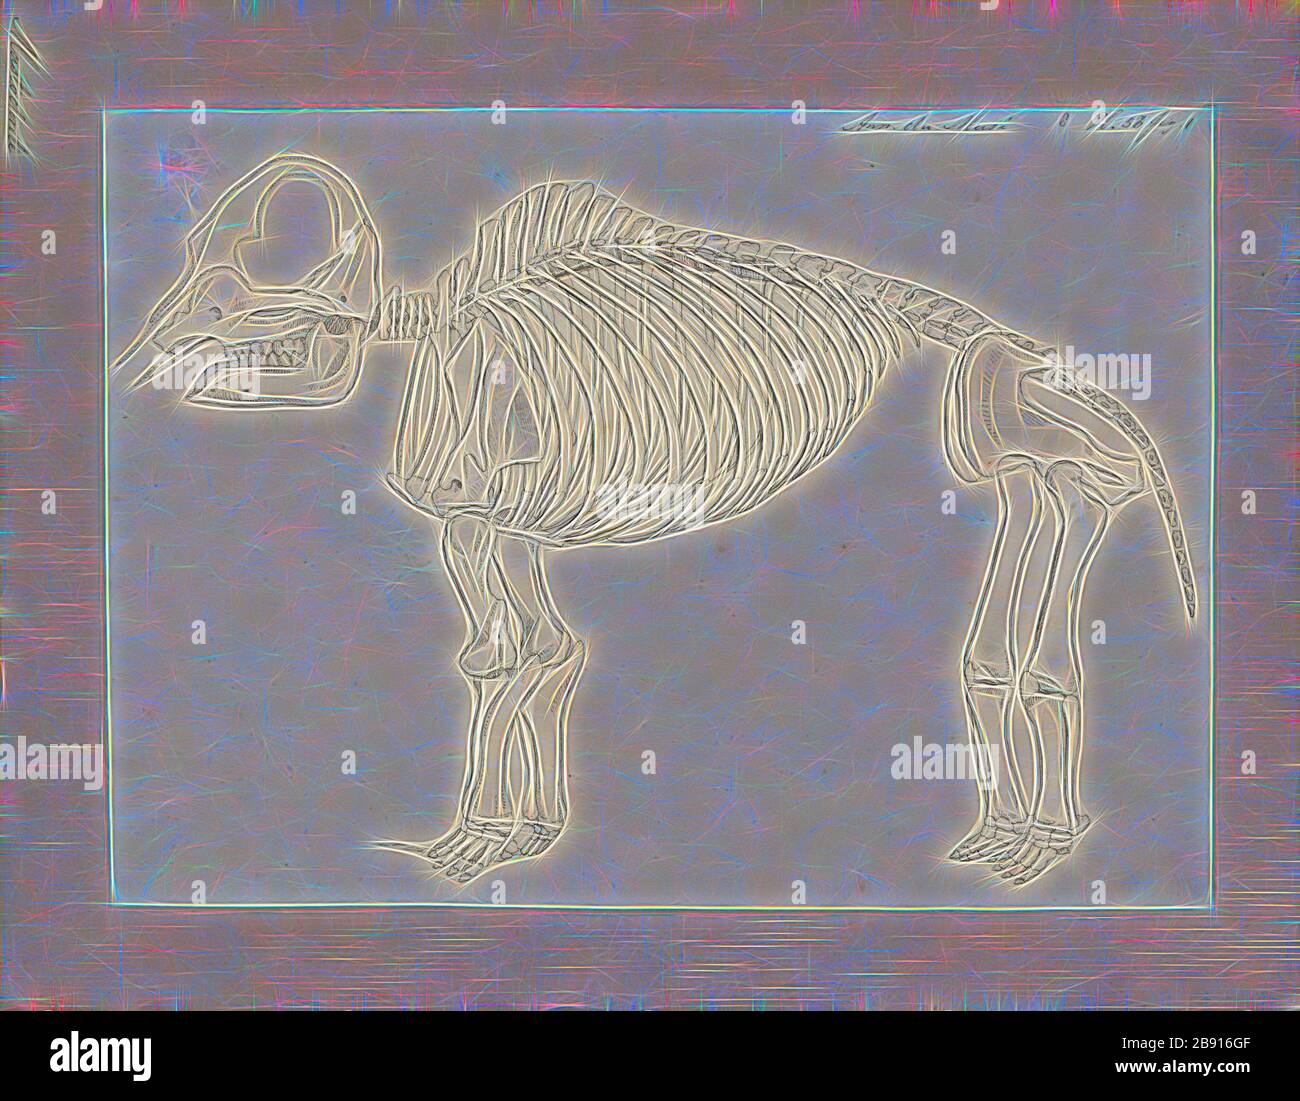 Mastodon spec., Print, Mastodons sind alle Arten von Exproboscideen in der Gattung Mammut (Familie Mammutidae), die entfernt mit Elefanten verwandt sind, die Nord- und Mittelamerika im späten Miocen oder späten Pliocen bis zu ihrem Erlöschen am Ende des Pleistozäns vor 10, 000 bis 11, 000 Jahren bewohnten. Mastodons lebten in Herden und waren überwiegend waldbewohnende Tiere, die sich von einer gemischten Ernährung ernährten, die durch Browsen und Beweidung mit saisonaler Präferenz beim Browsen gewonnen wurde, ähnlich wie lebende Elefanten., Skelett, von Gibon neu vorgestellt, Design von warmem, fröhlichem Leuchten von Helligkeit und Licht Stockfoto